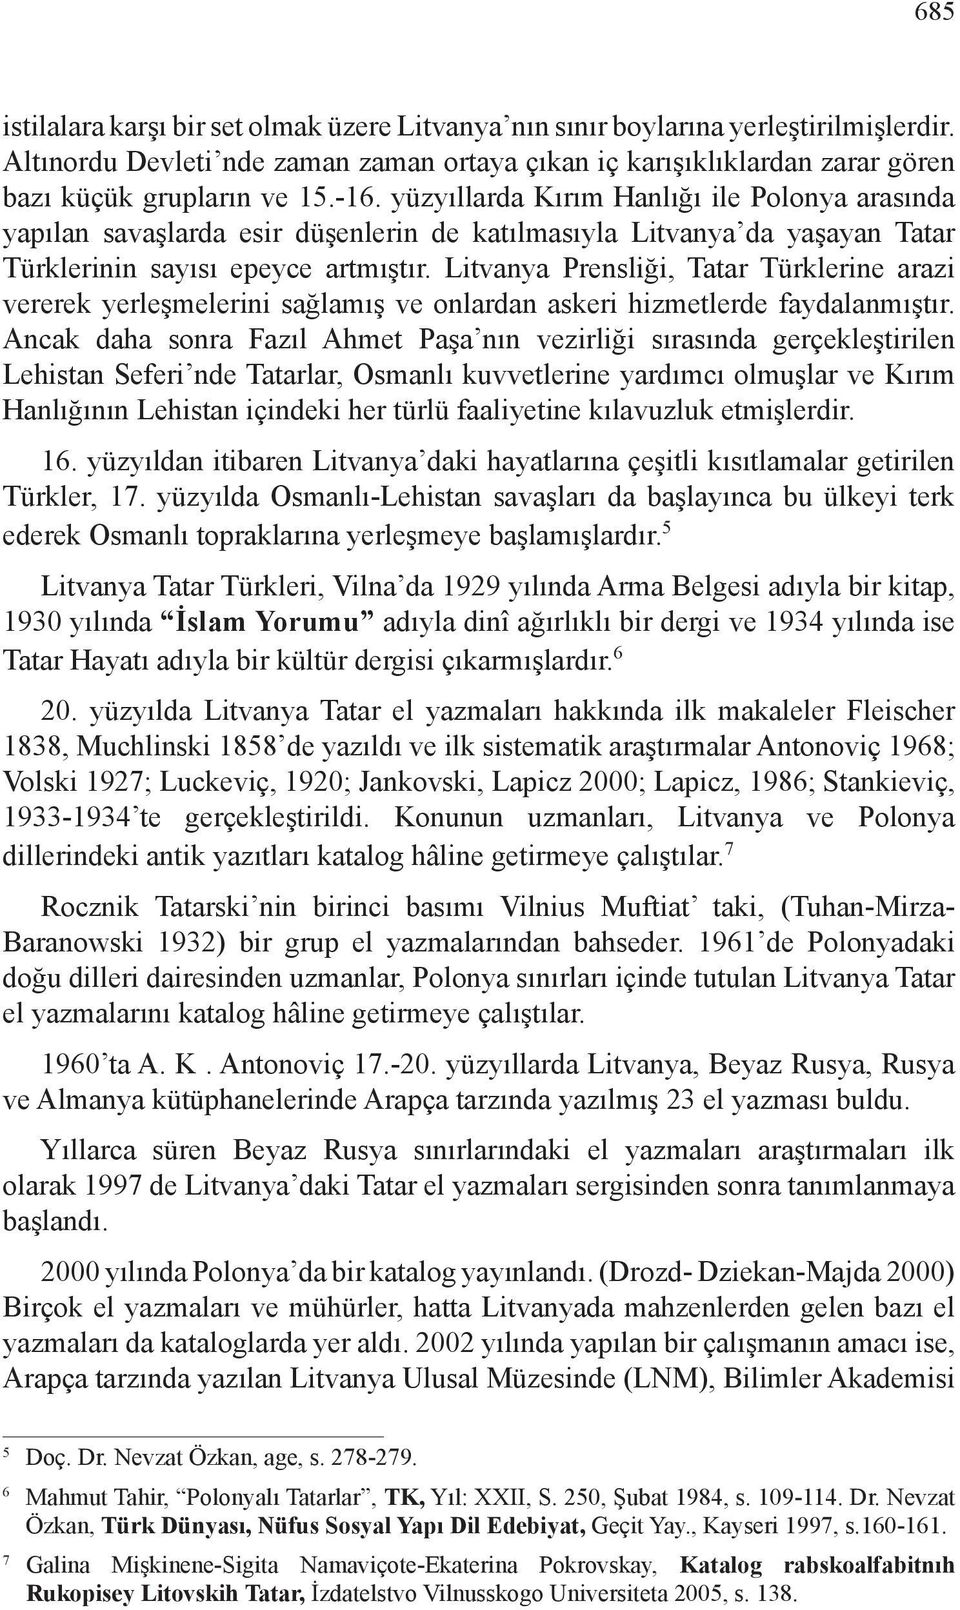 Litvanya Prensliği, Tatar Türklerine arazi vererek yerleşmelerini sağlamış ve onlardan askeri hizmetlerde faydalanmıştır.